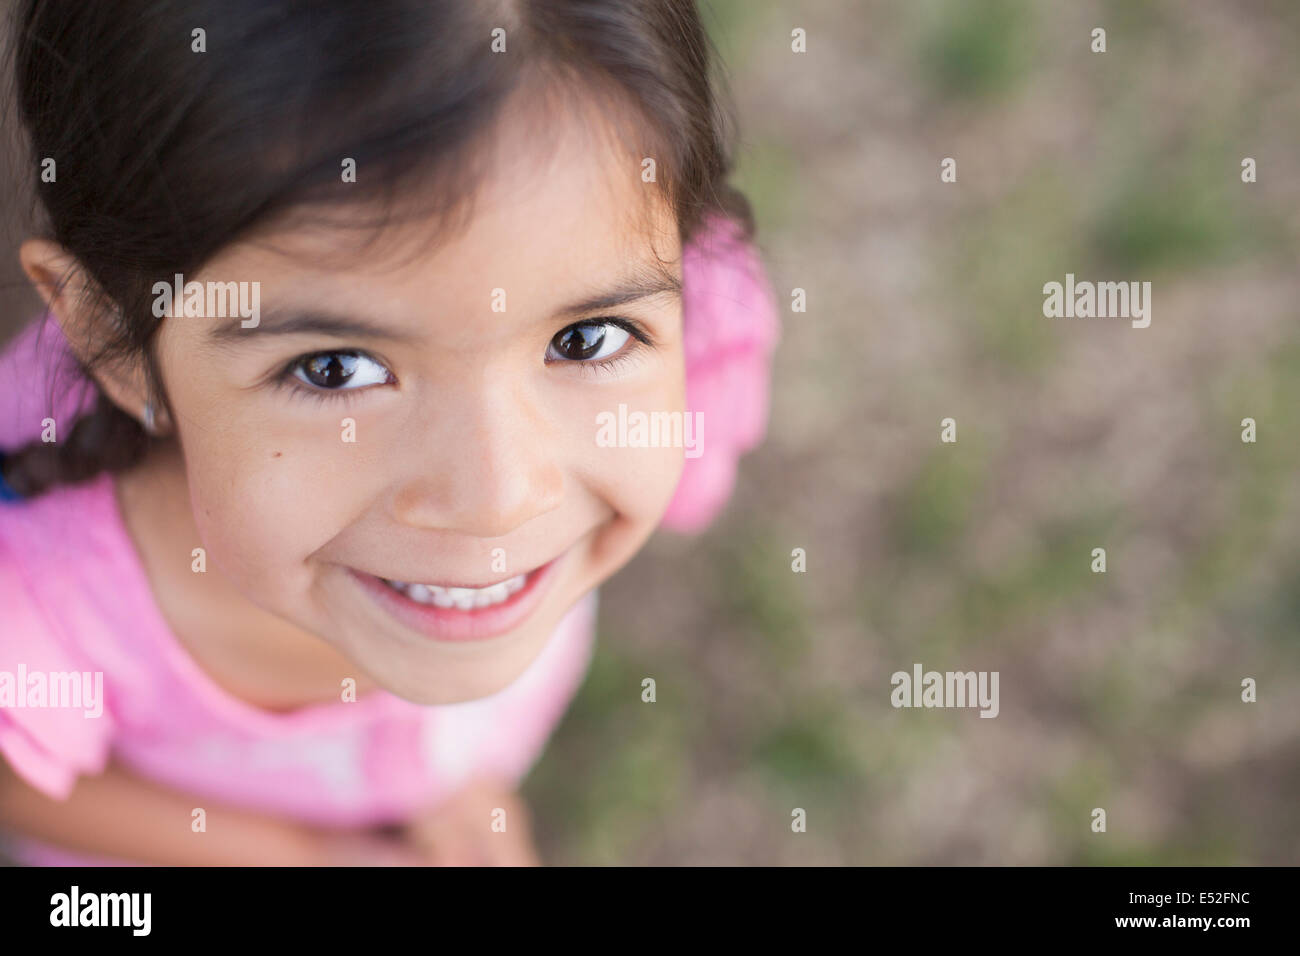 Vue de dessus d'un enfant, une fille avec des cheveux bruns foncés et les yeux bruns. Banque D'Images